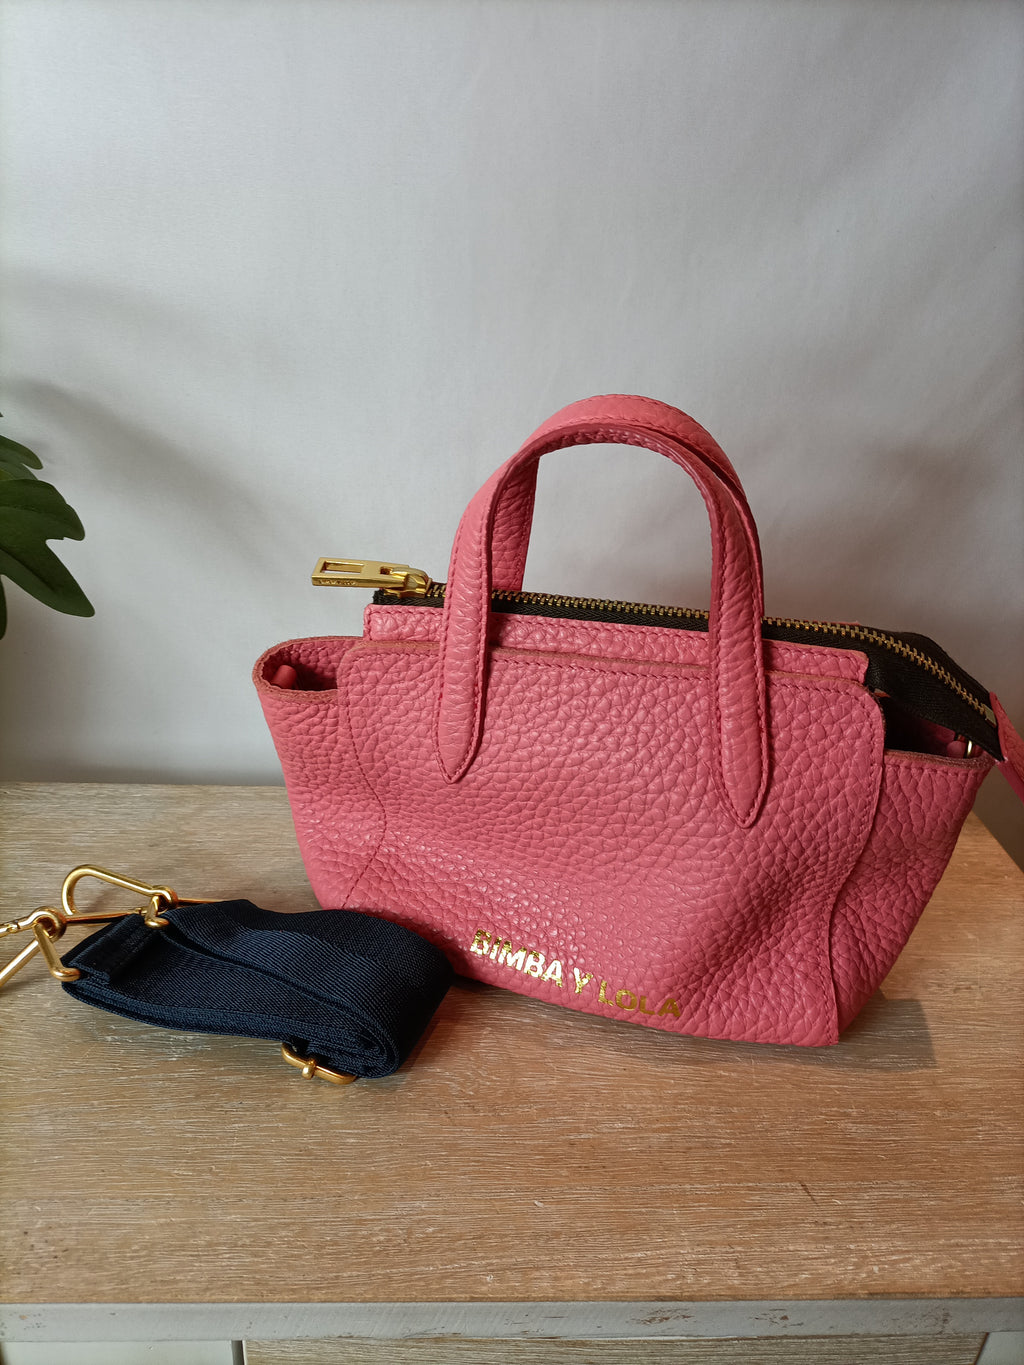 BIMBA Y LOLA. Bolso rosa textura – Hibuy market